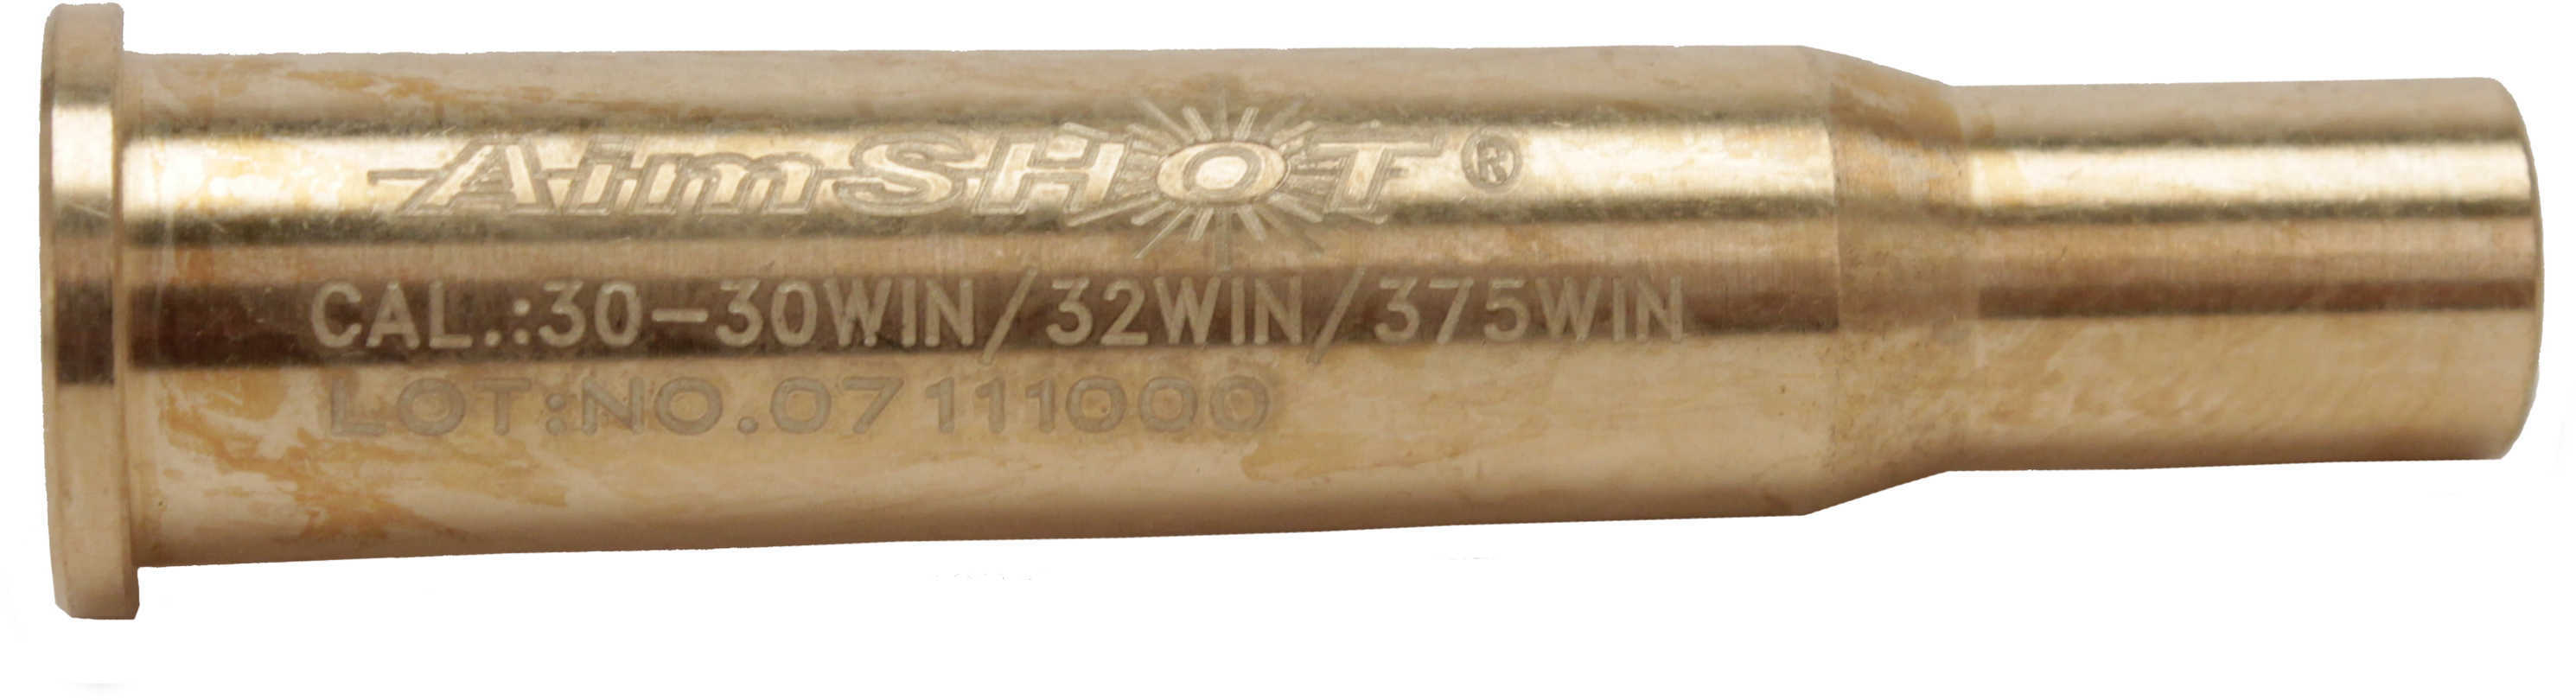 Aimshot AR3030 Arbor 30-30 Winchester Boresighter Brass